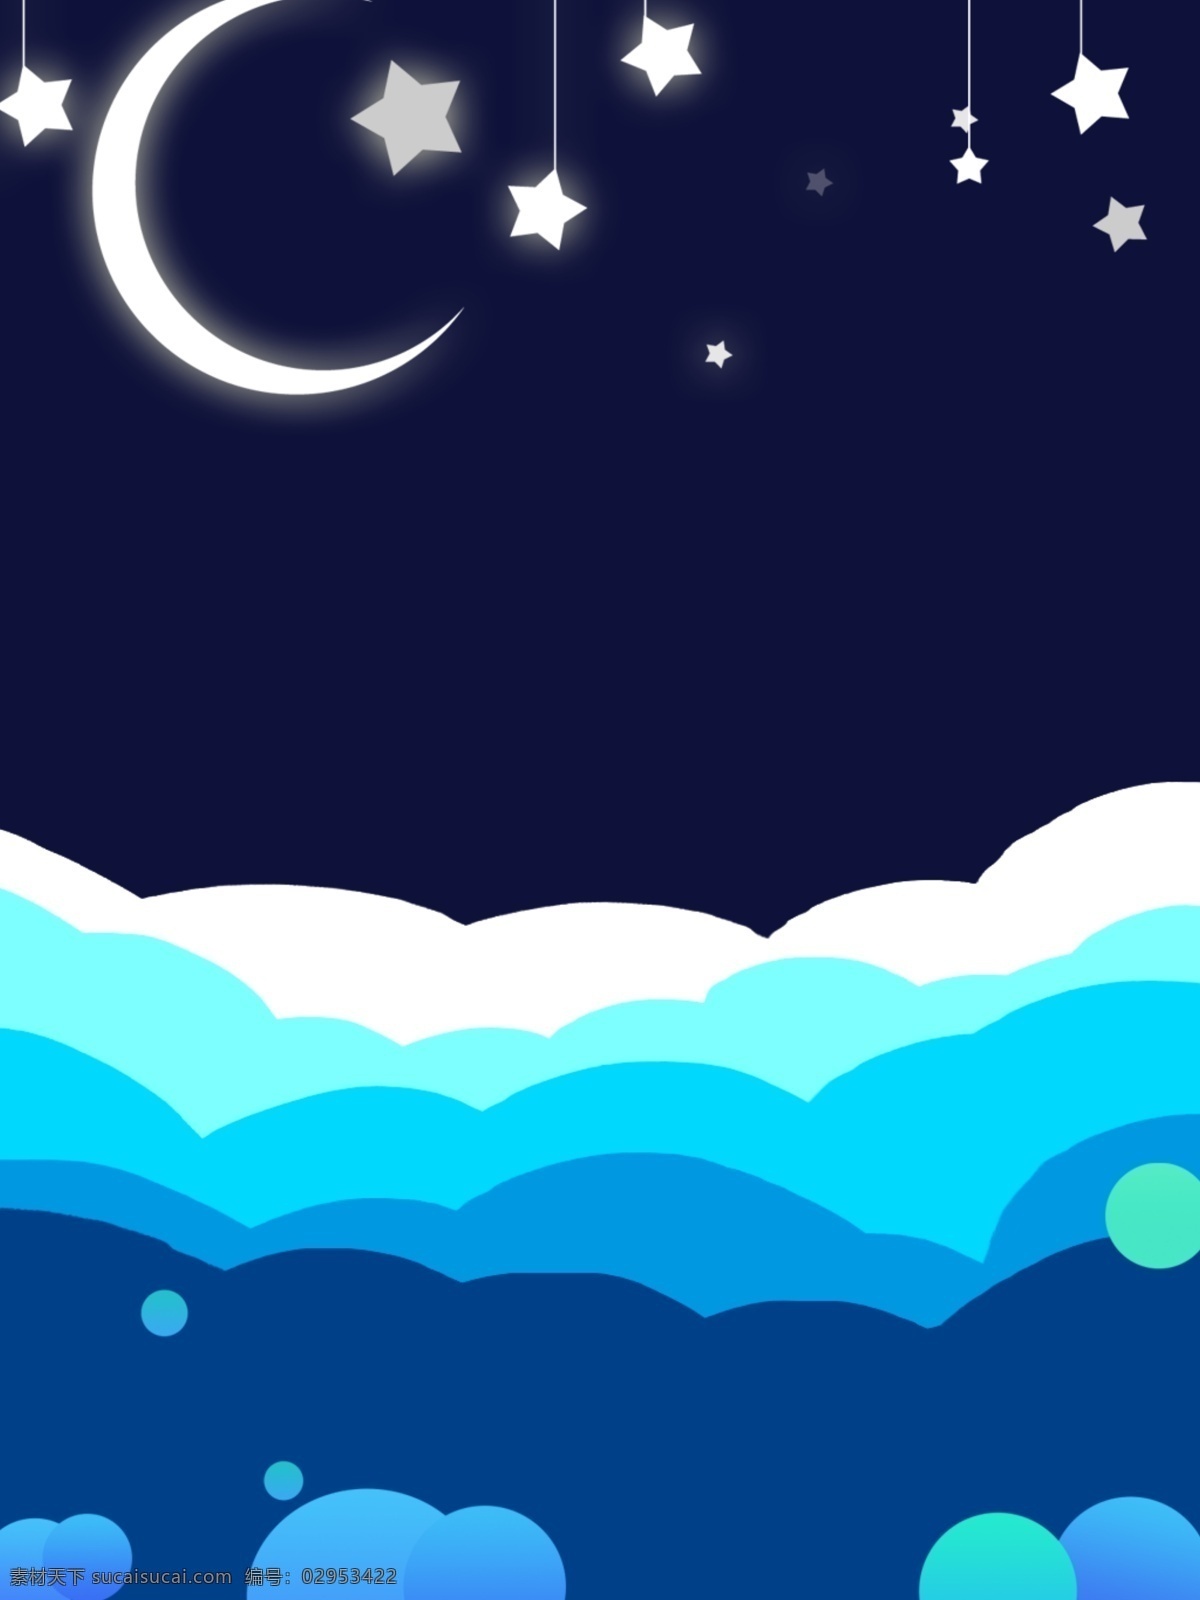 层叠 层次 蓝色 夜空 木 母婴 背景 星星 海洋 天空 星空 月亮 水 波浪 波纹